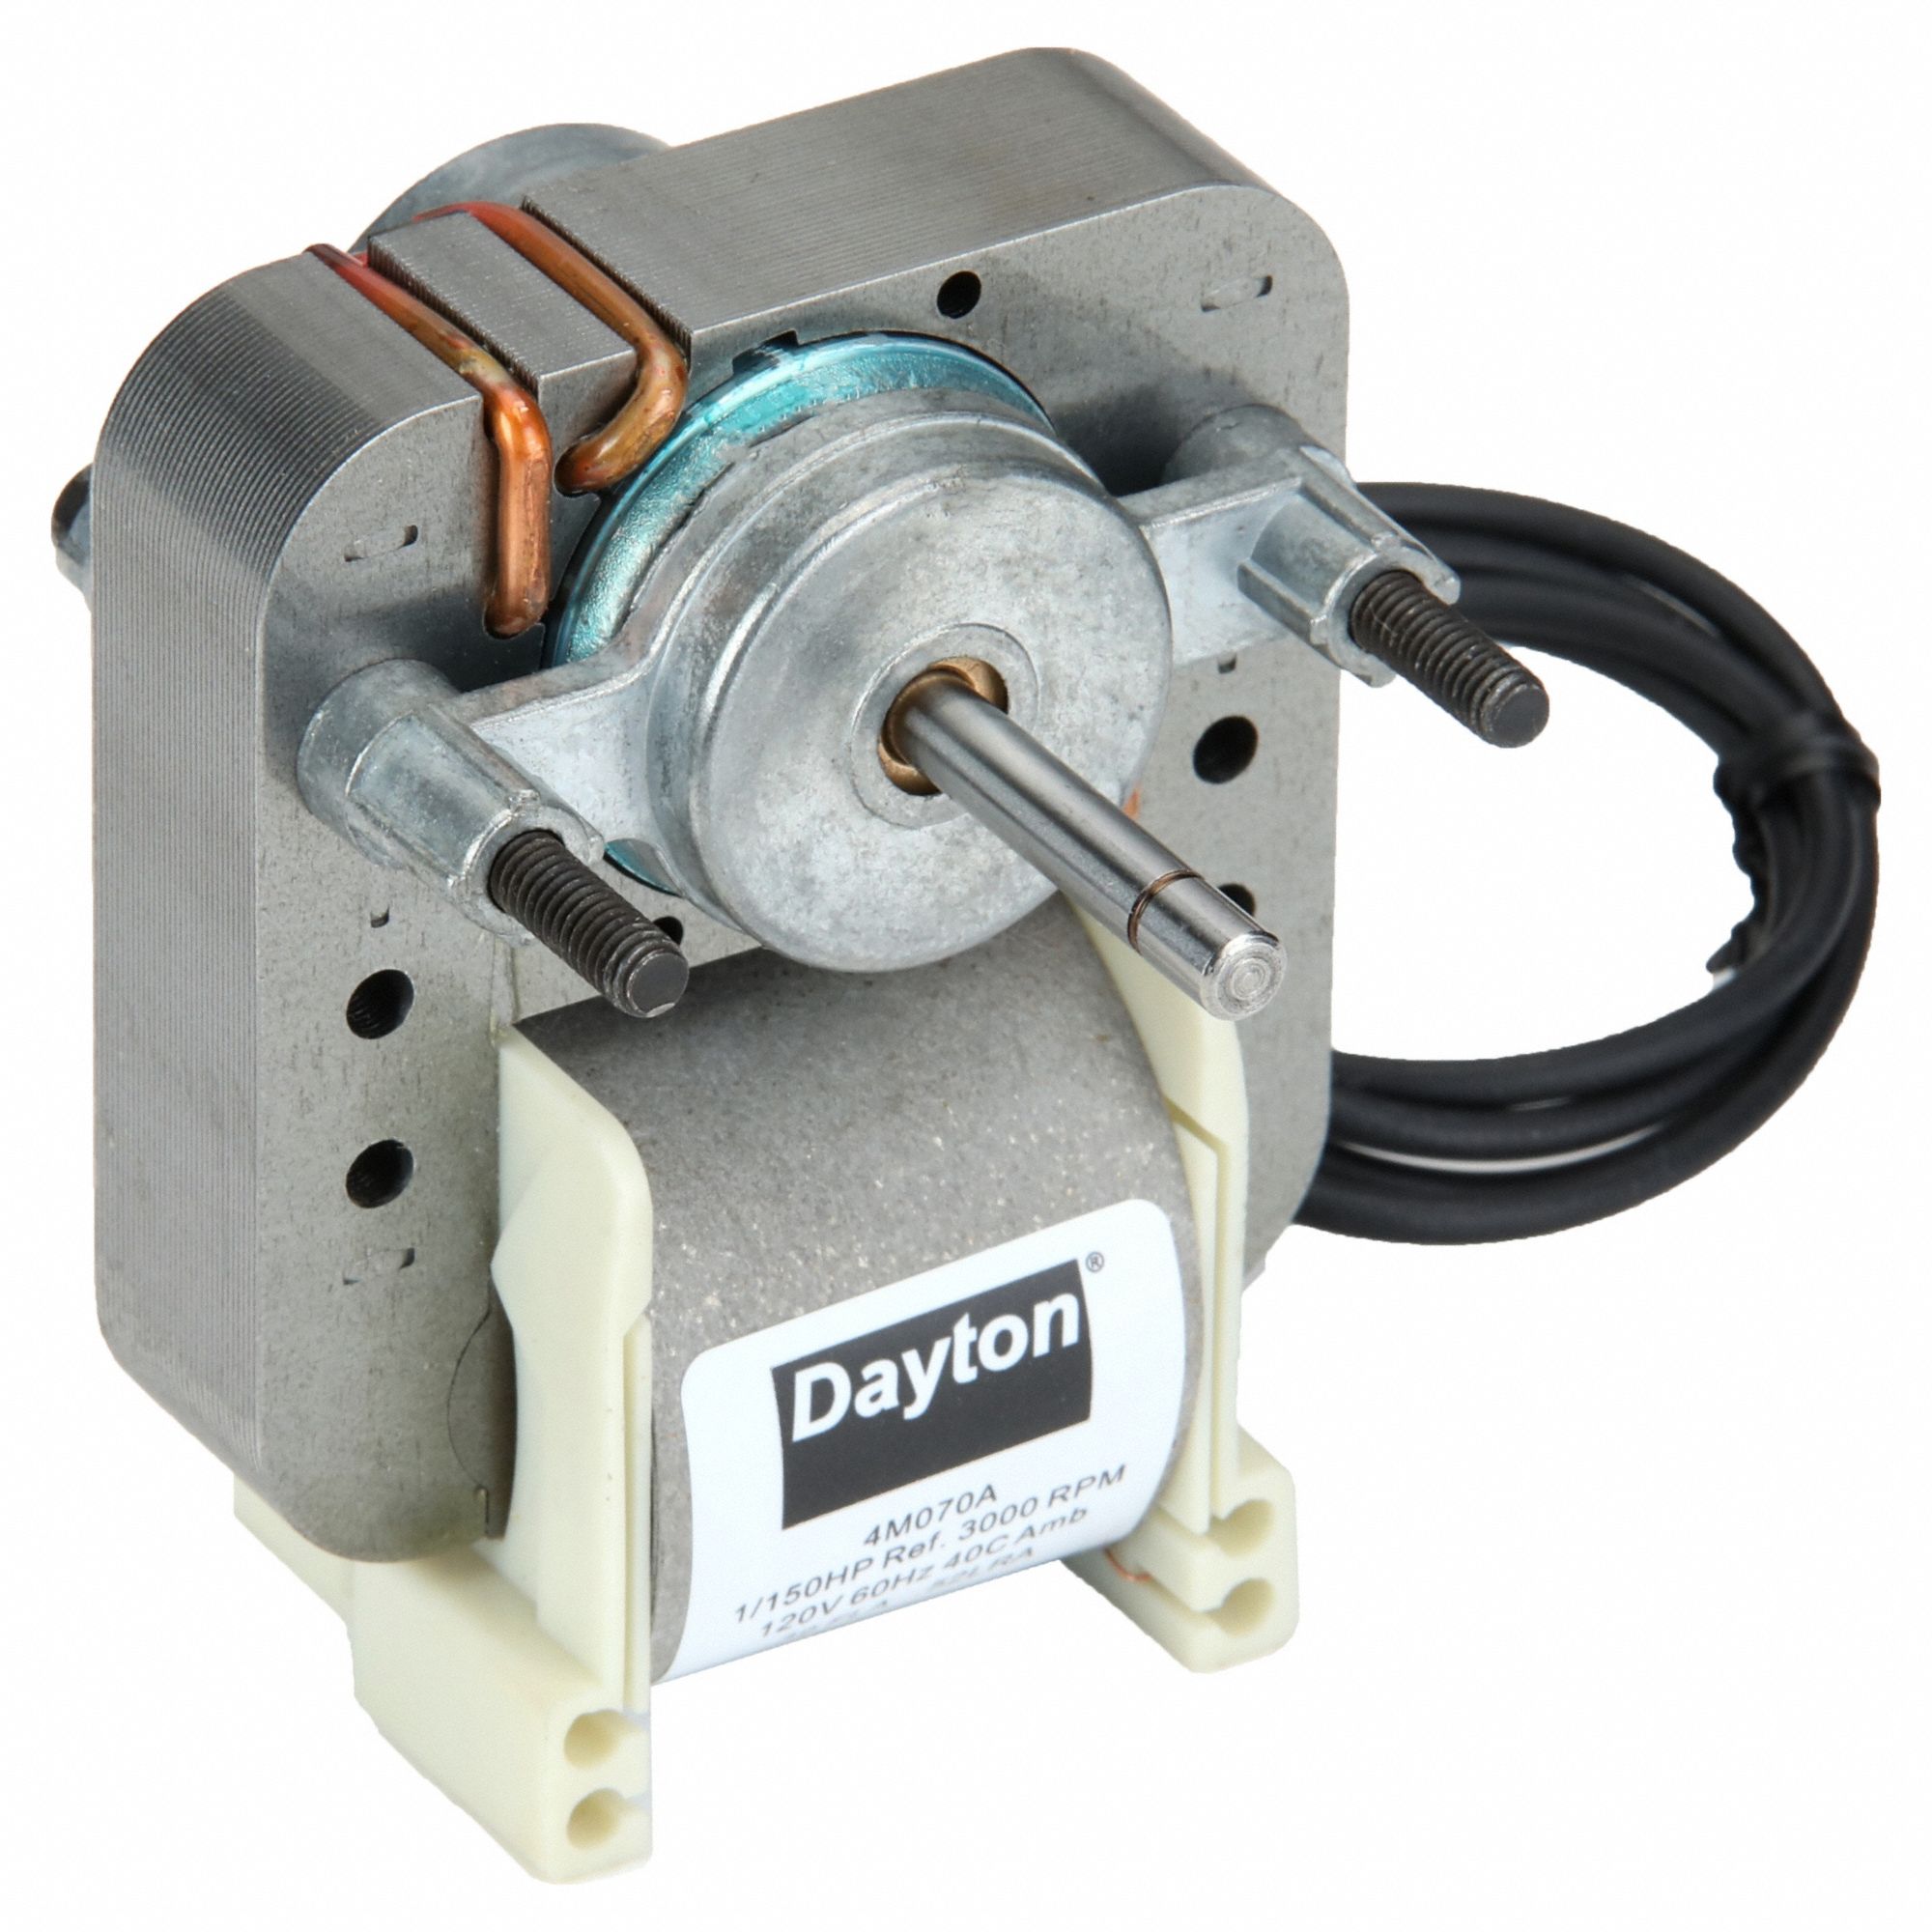 DAYTON C-Frame Motor: 1/150, 3,000, 1 No. of Speeds, 115V AC, CWSE,  Impedance with One-Shot Backup